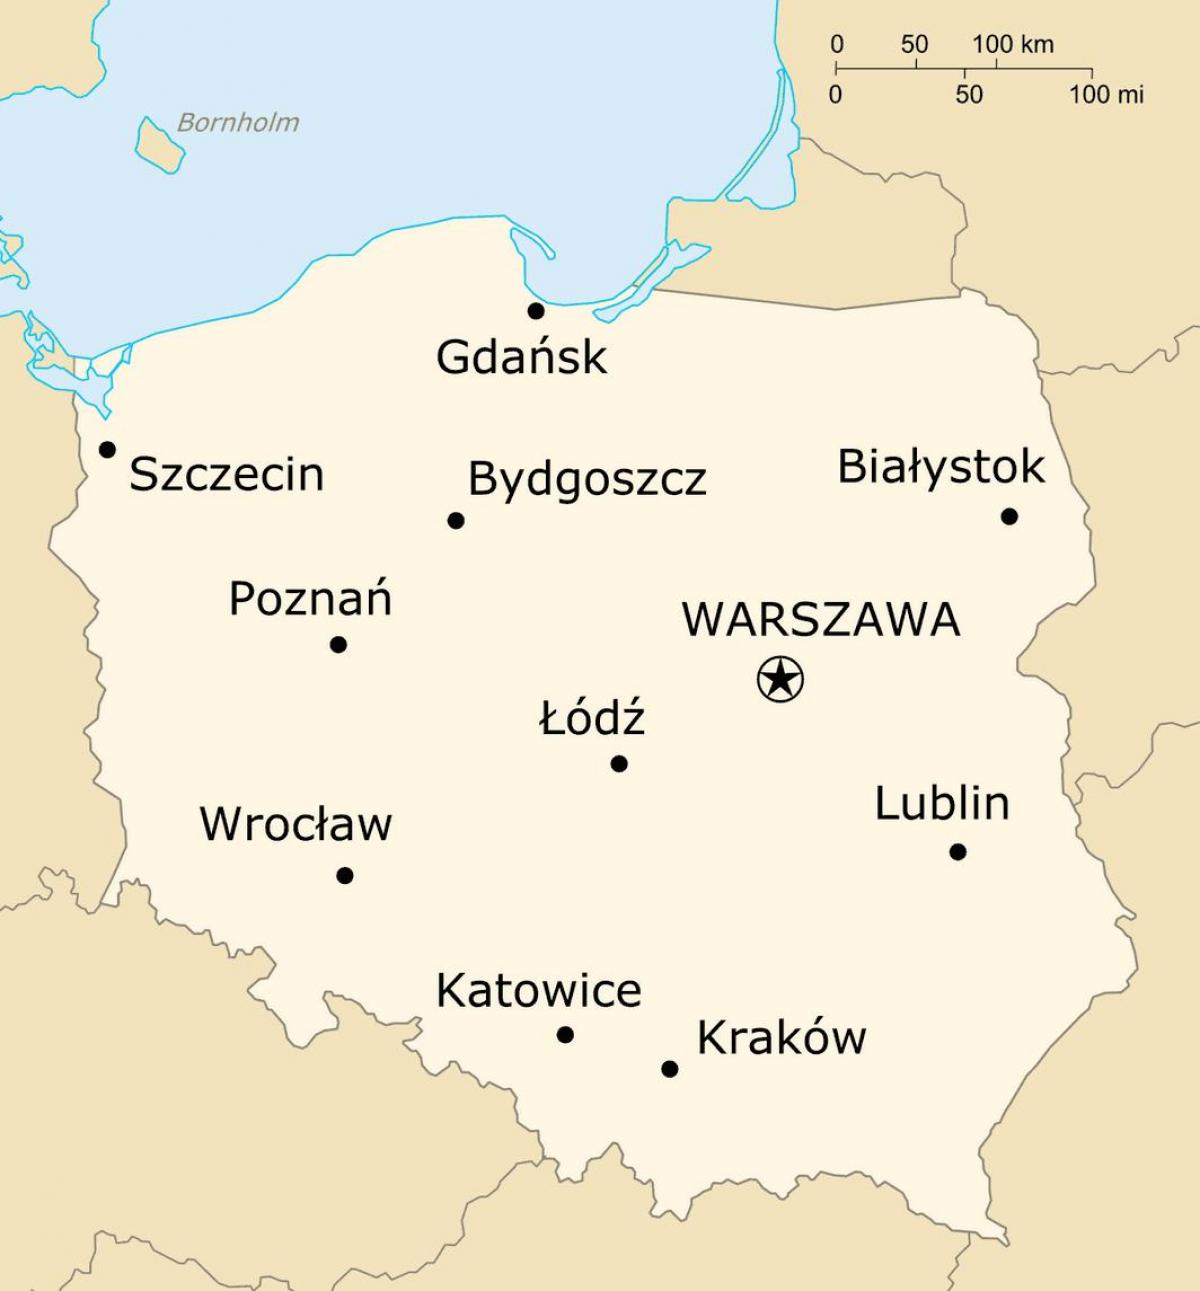 Mappa della Polonia con le principali città